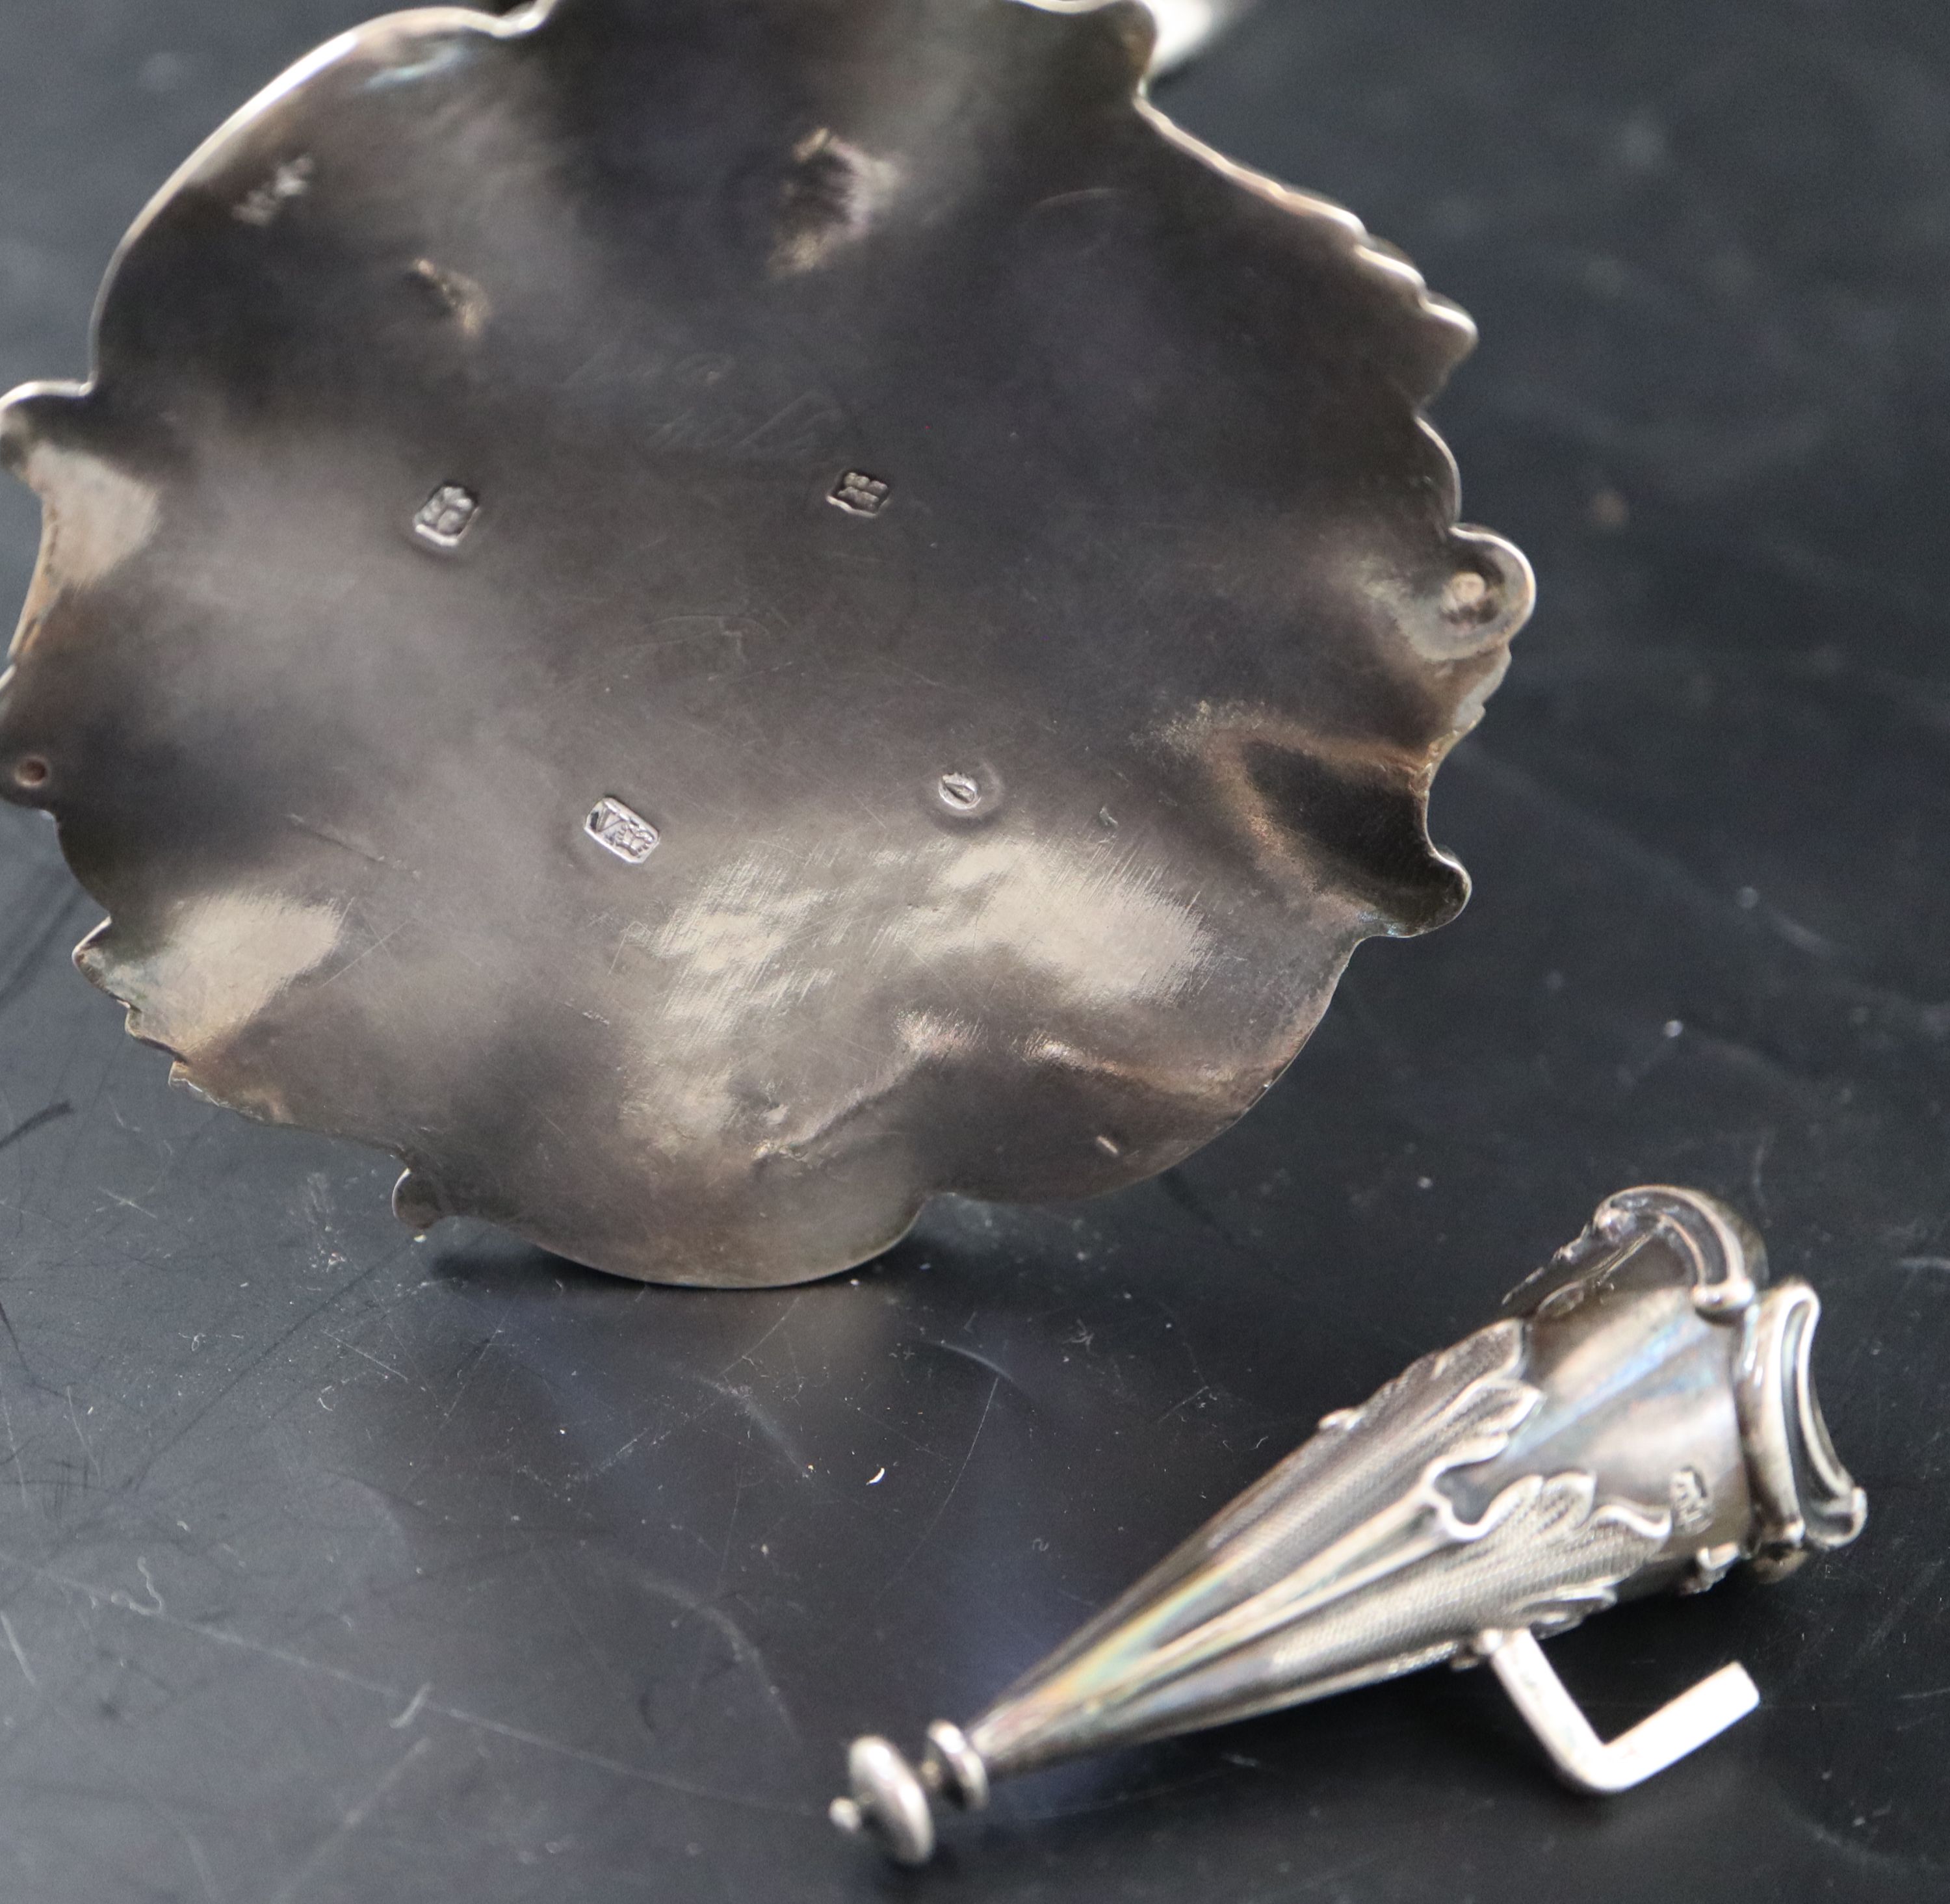 An ornate Victorian silver chamberstick, 14.3cm, gross 194 grams.